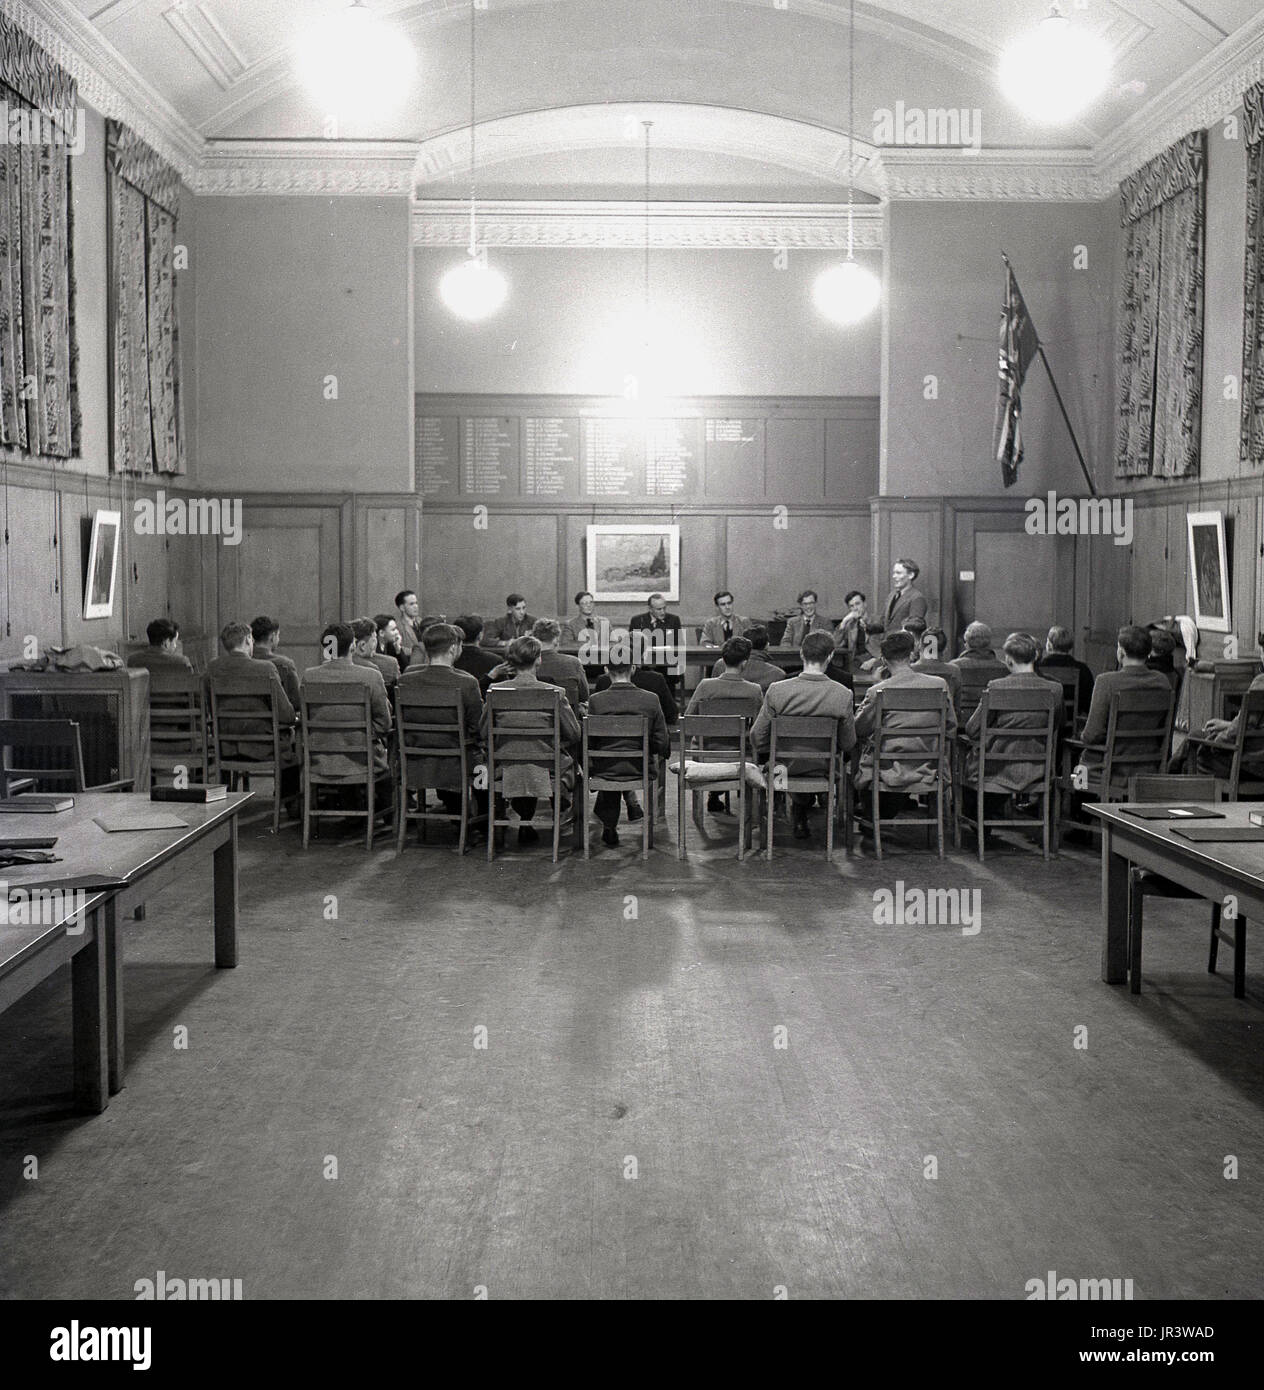 1948, storico, una pupilla addresssing gli altri alunni e maestri della scuola nella sala principale a Haileybury public school, un tradizionale british boys solo Boarding School, Hertford, Inghilterra, Regno Unito. Foto Stock